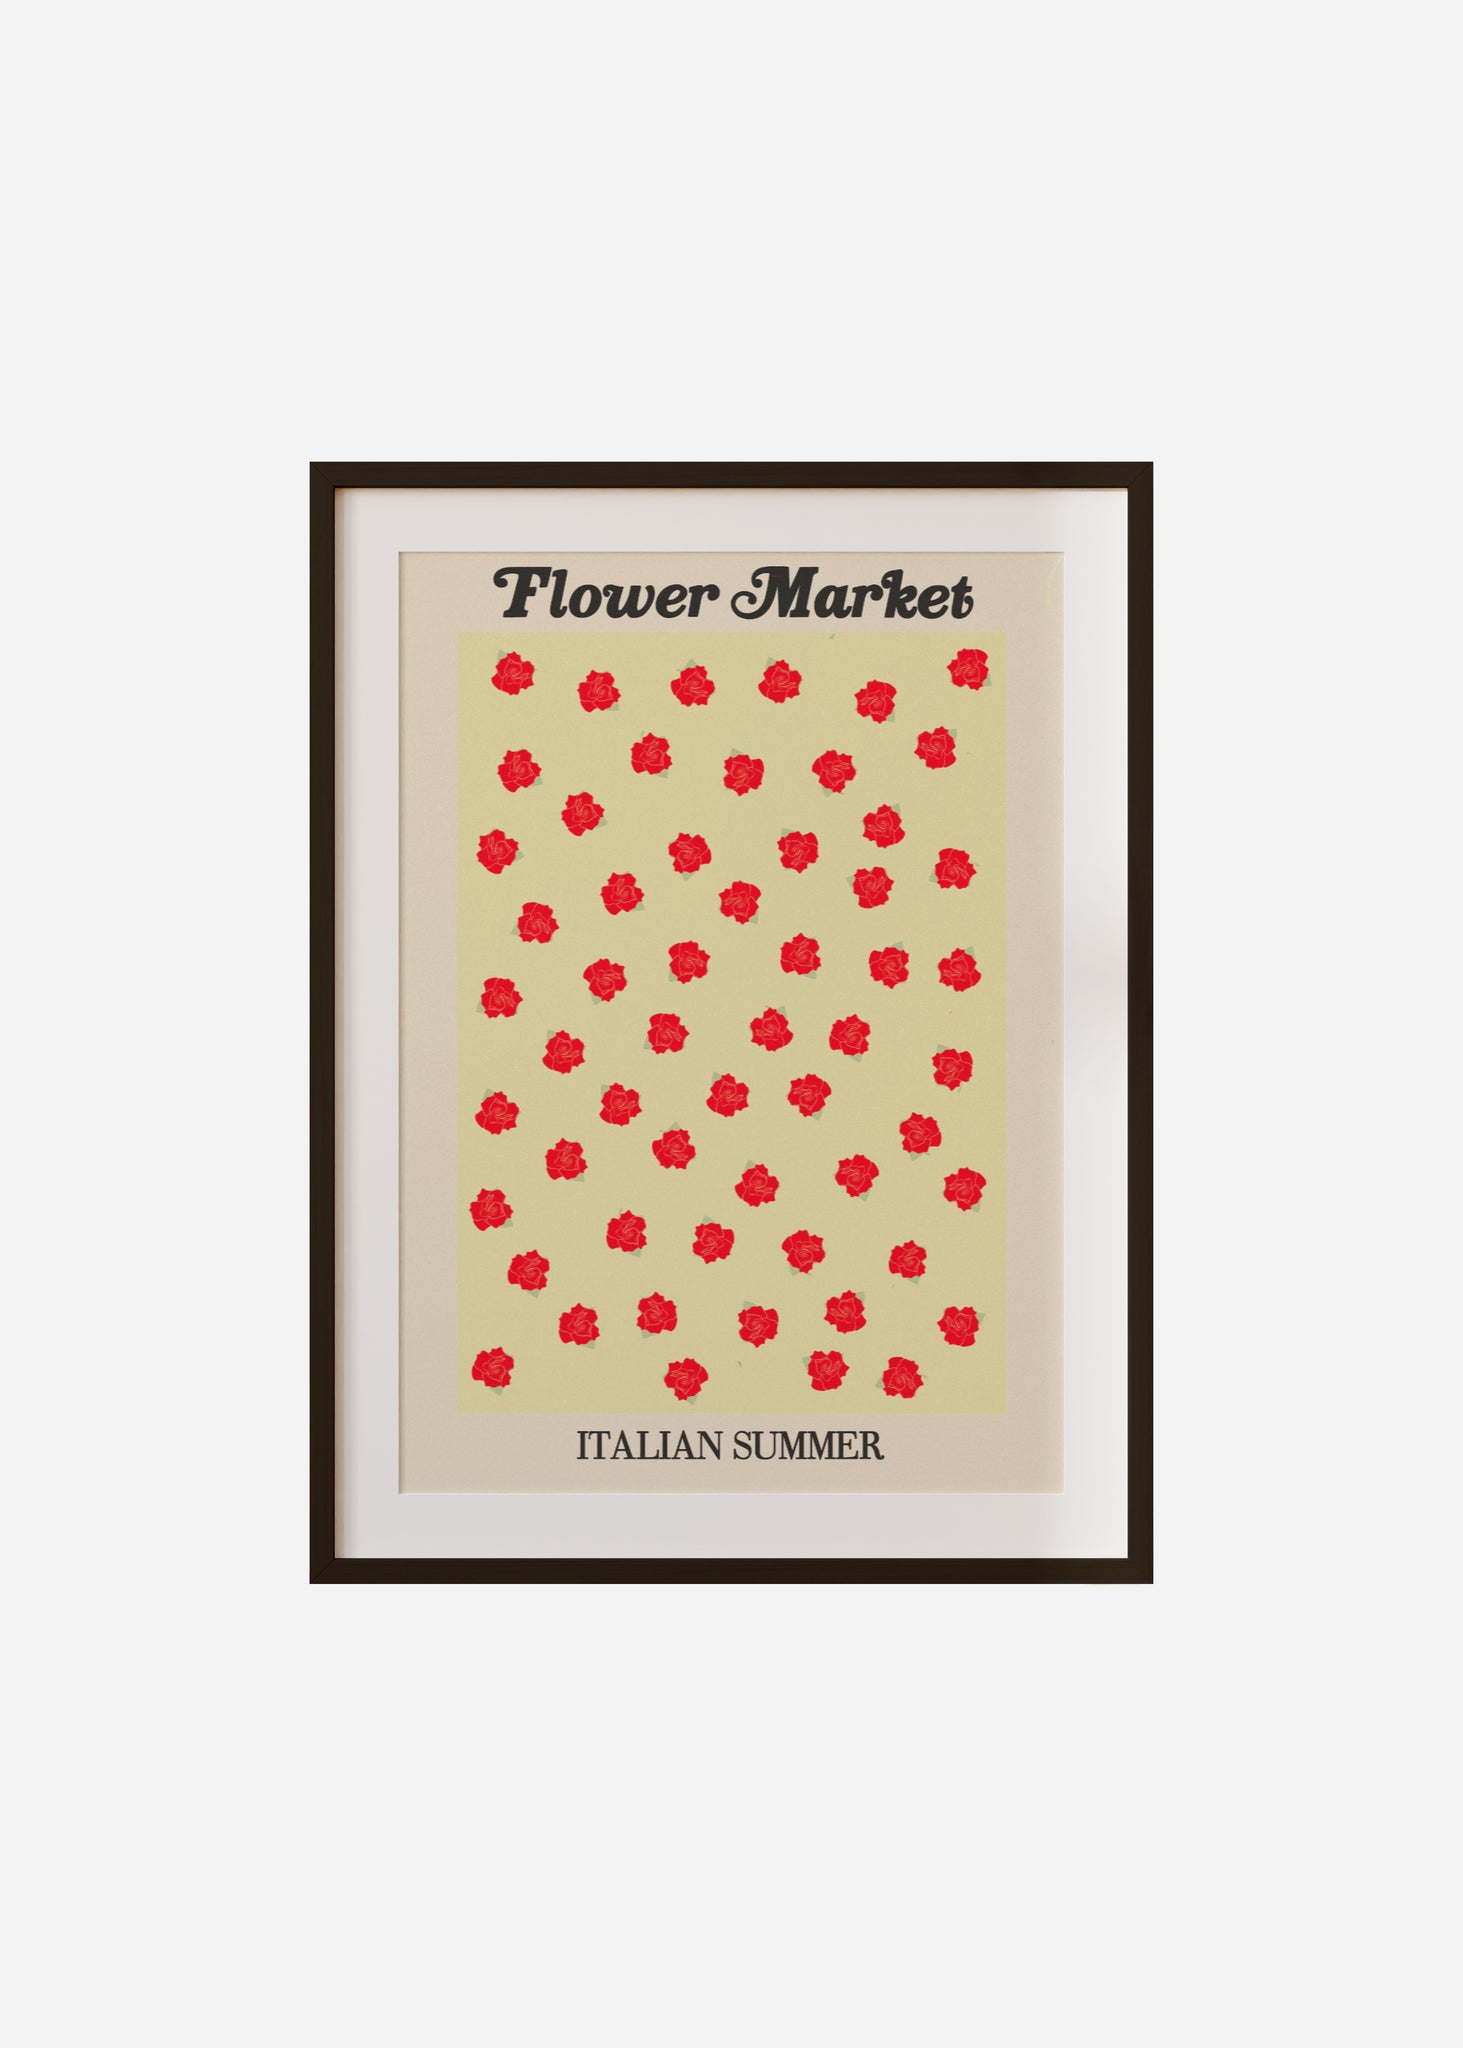 flower market / italian summer Framed & Mounted Print